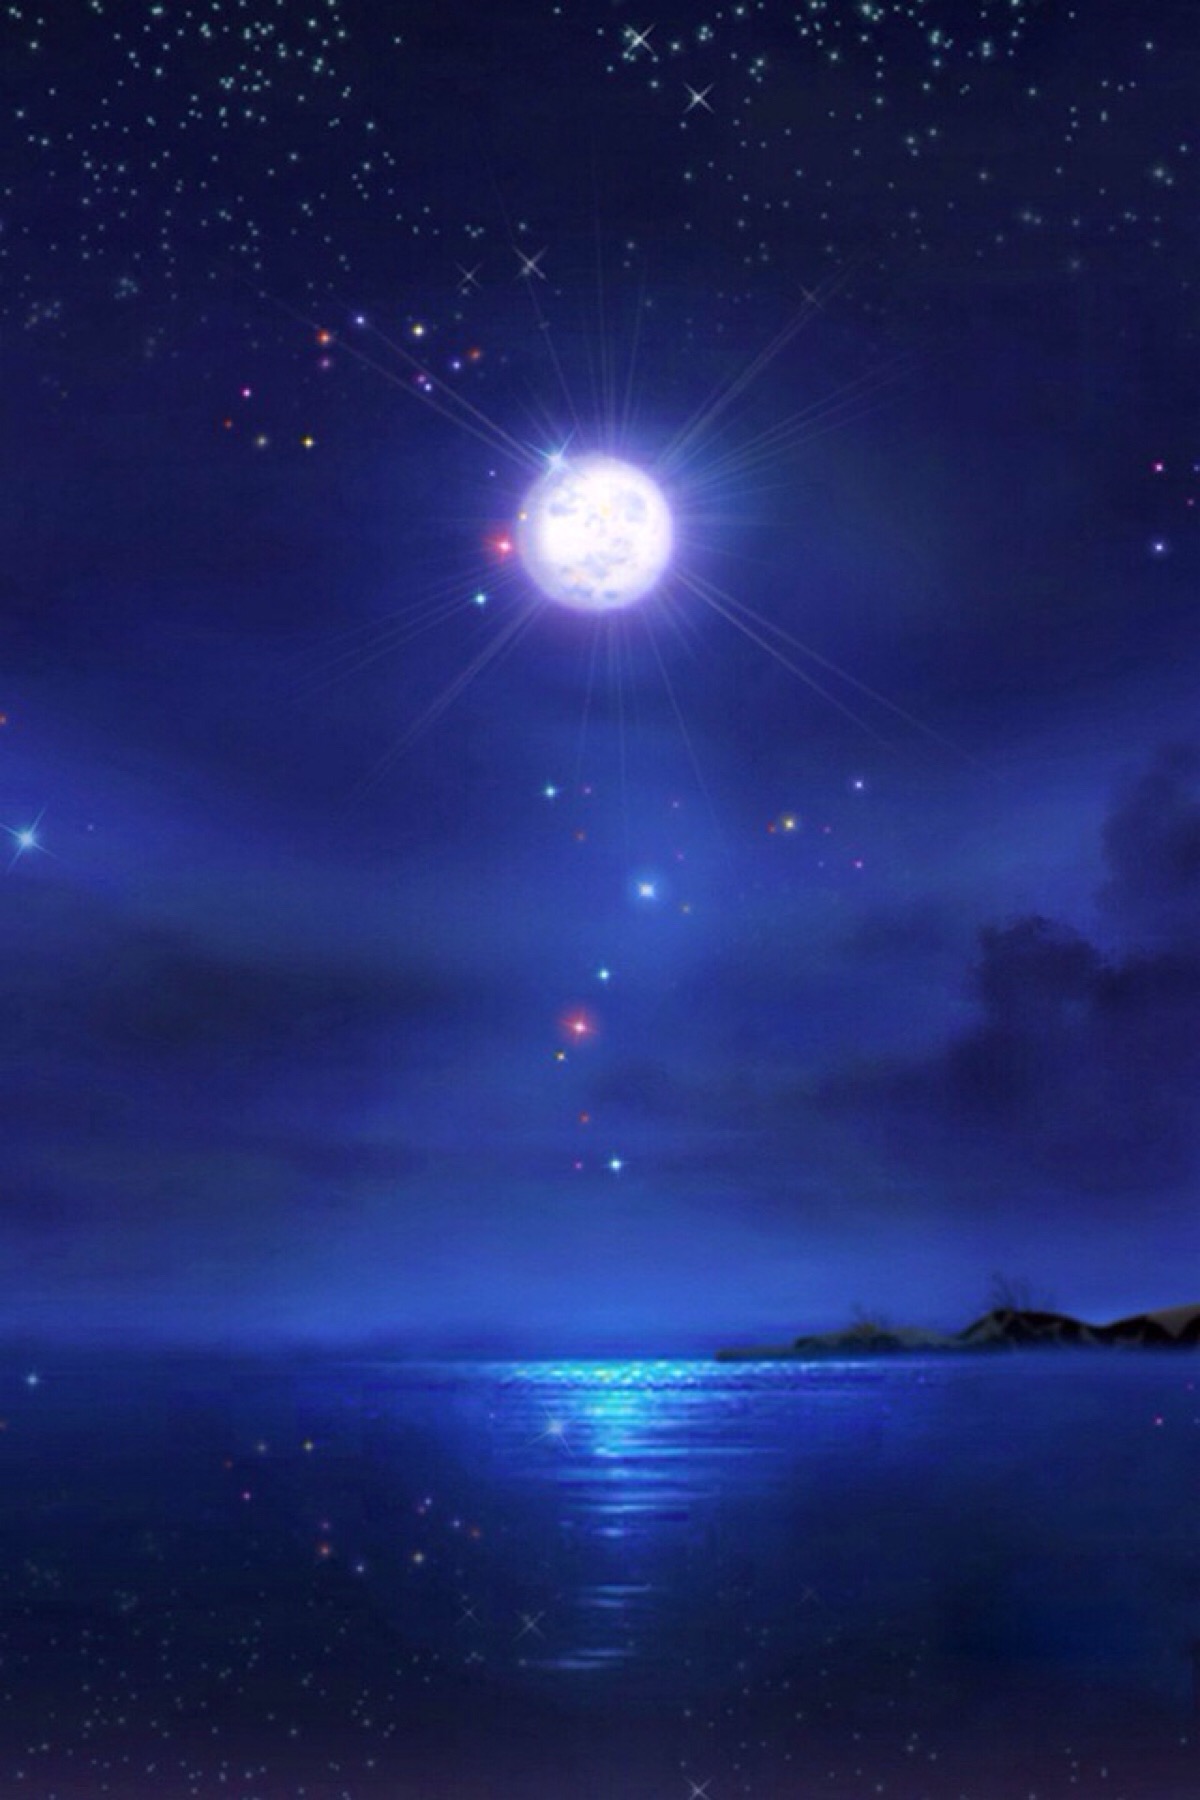 唯美星空 夜景 明月 月光如洗 海面 夜空 自然风景 唯美壁纸 手机壁纸